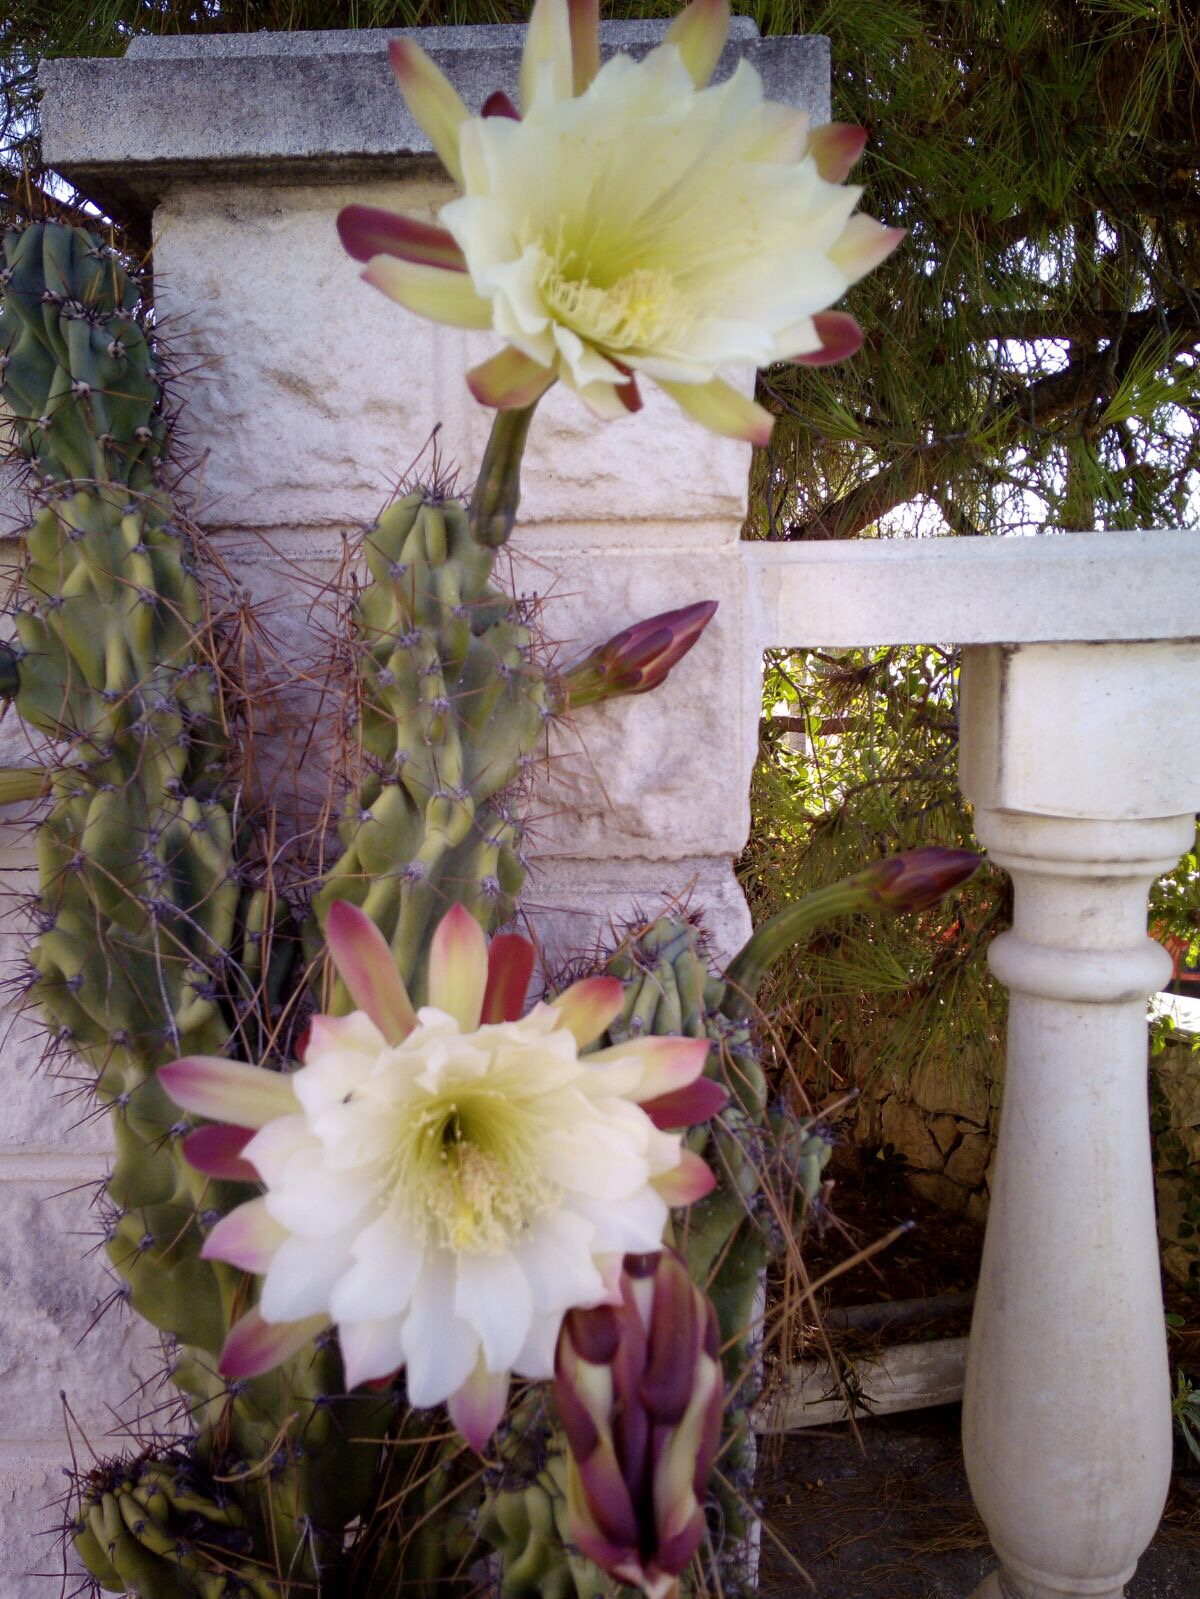 Onze trots, de cactus in bloei